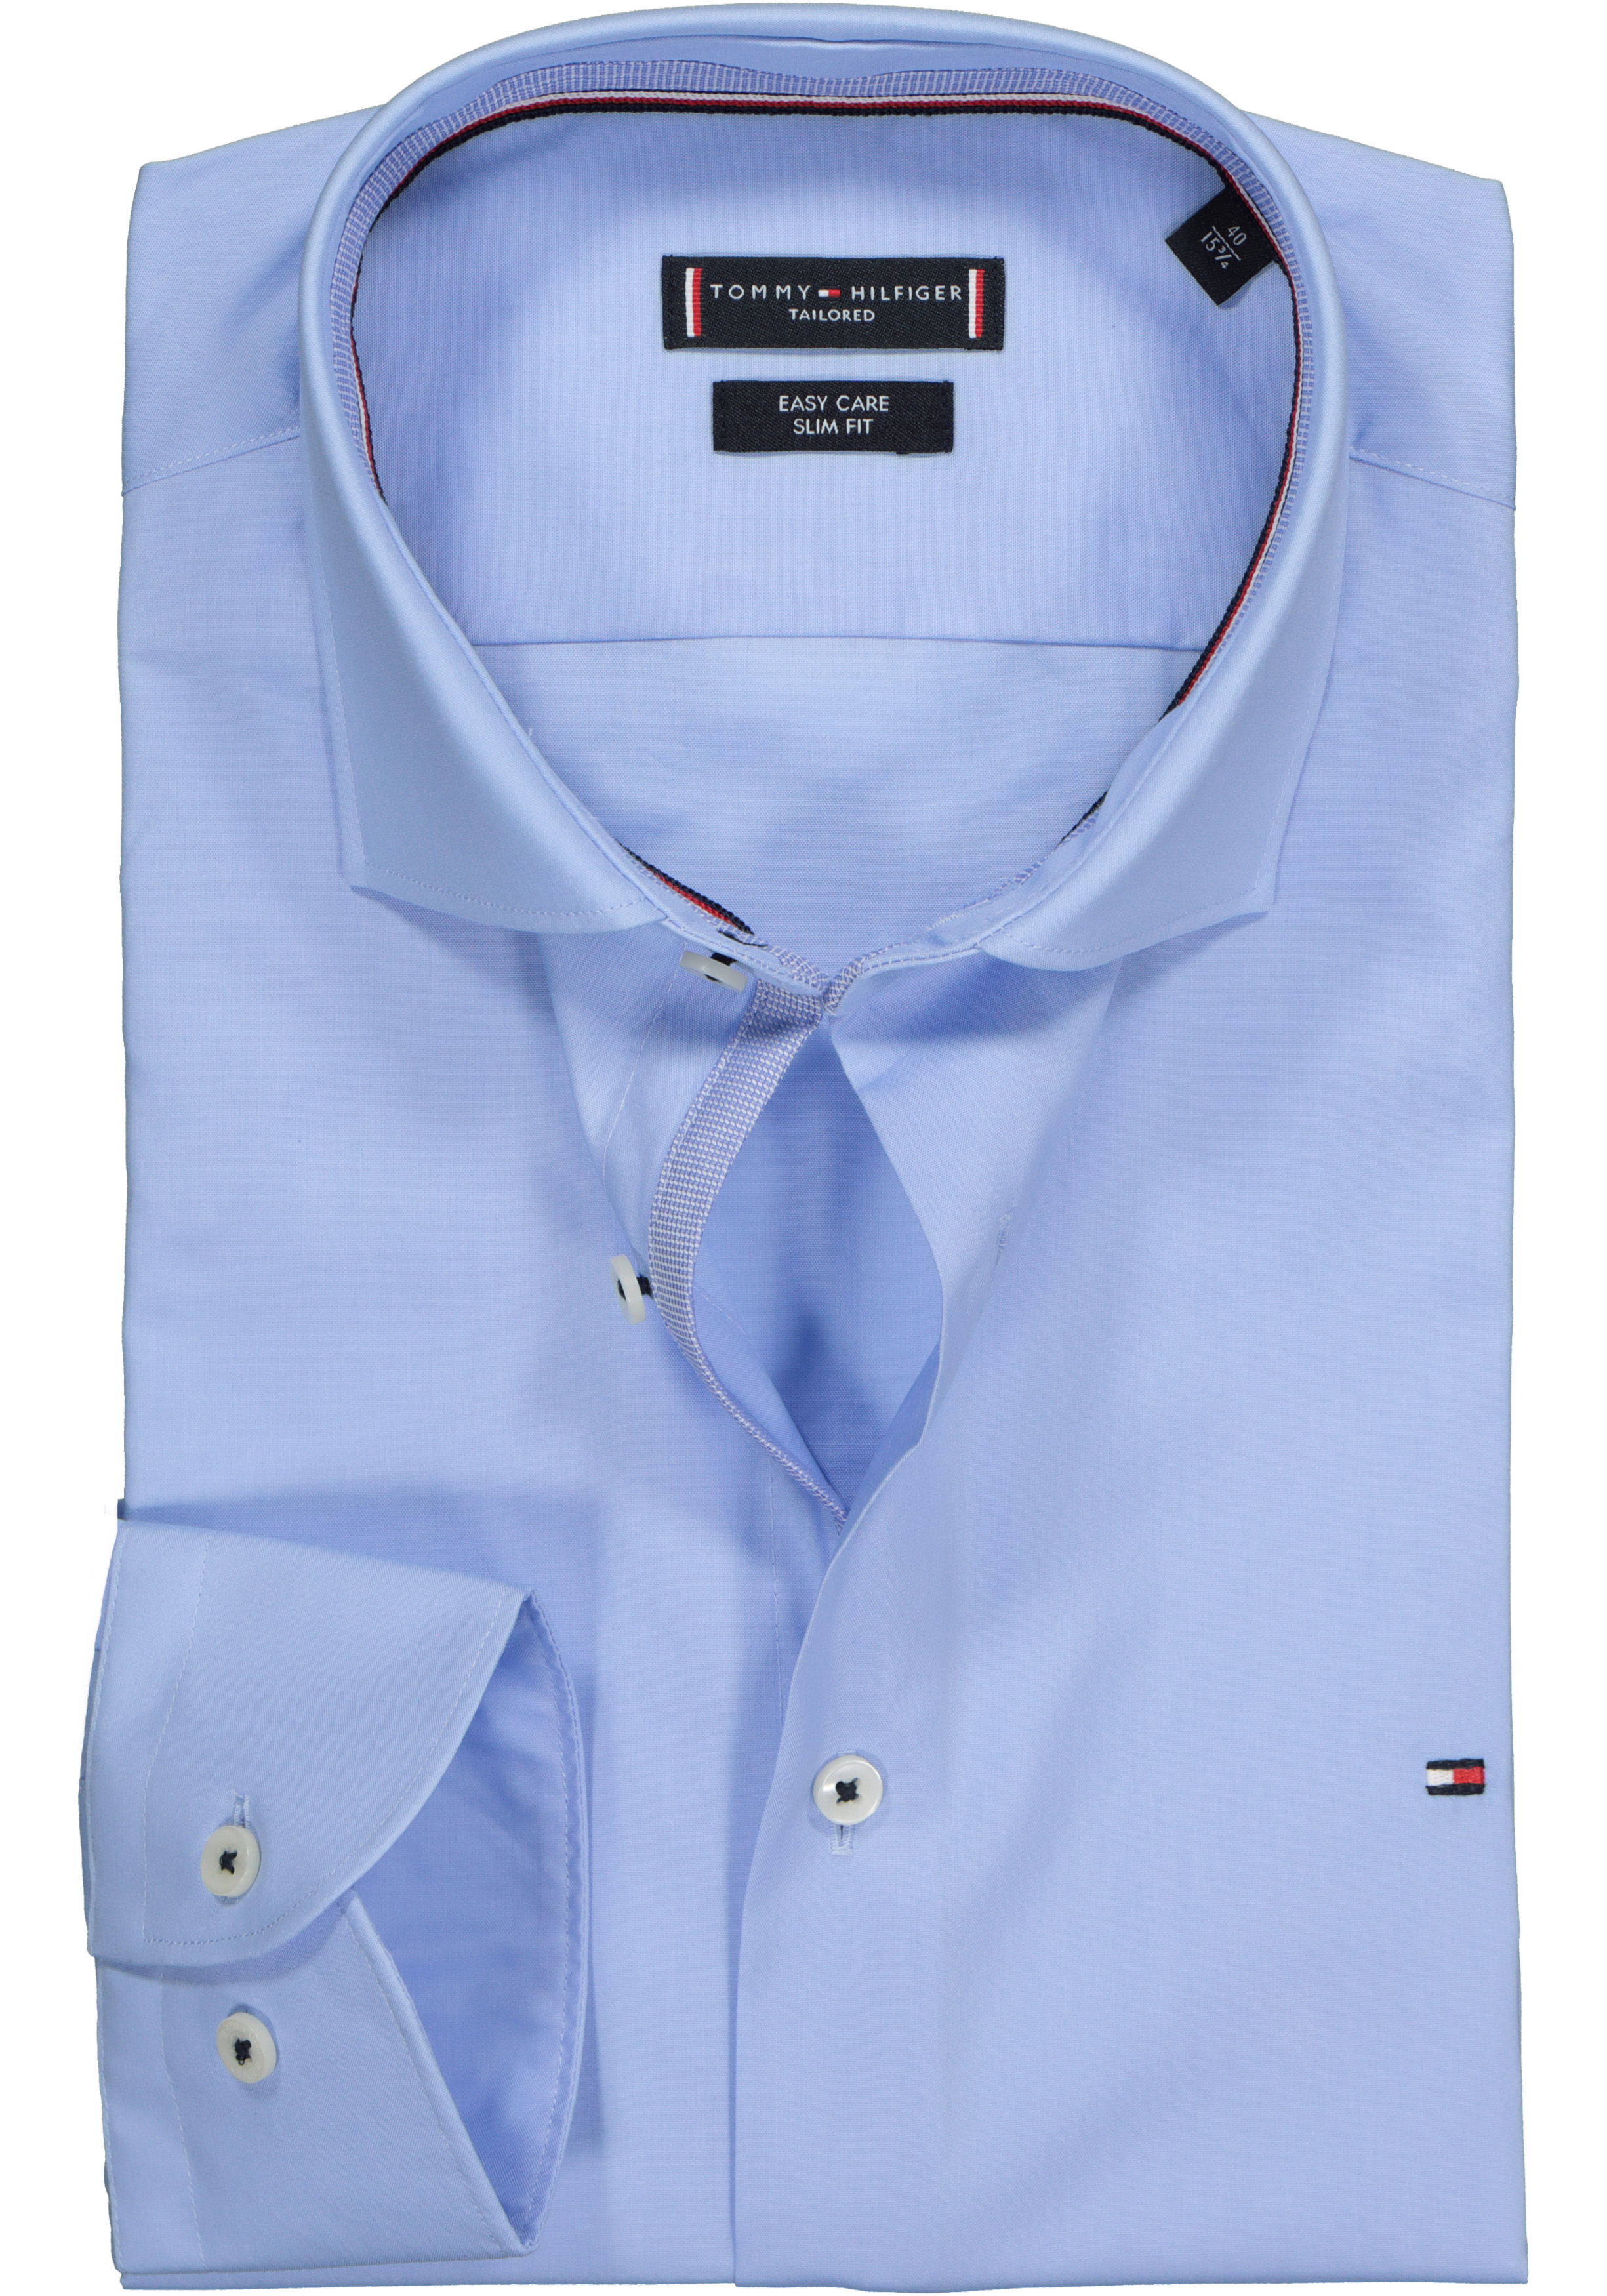 Bij naam formaat Rondsel Tommy Hilfiger Classic slim fit overhemd, lichtblauw (contrast) - Zomer  SALE tot 50% korting